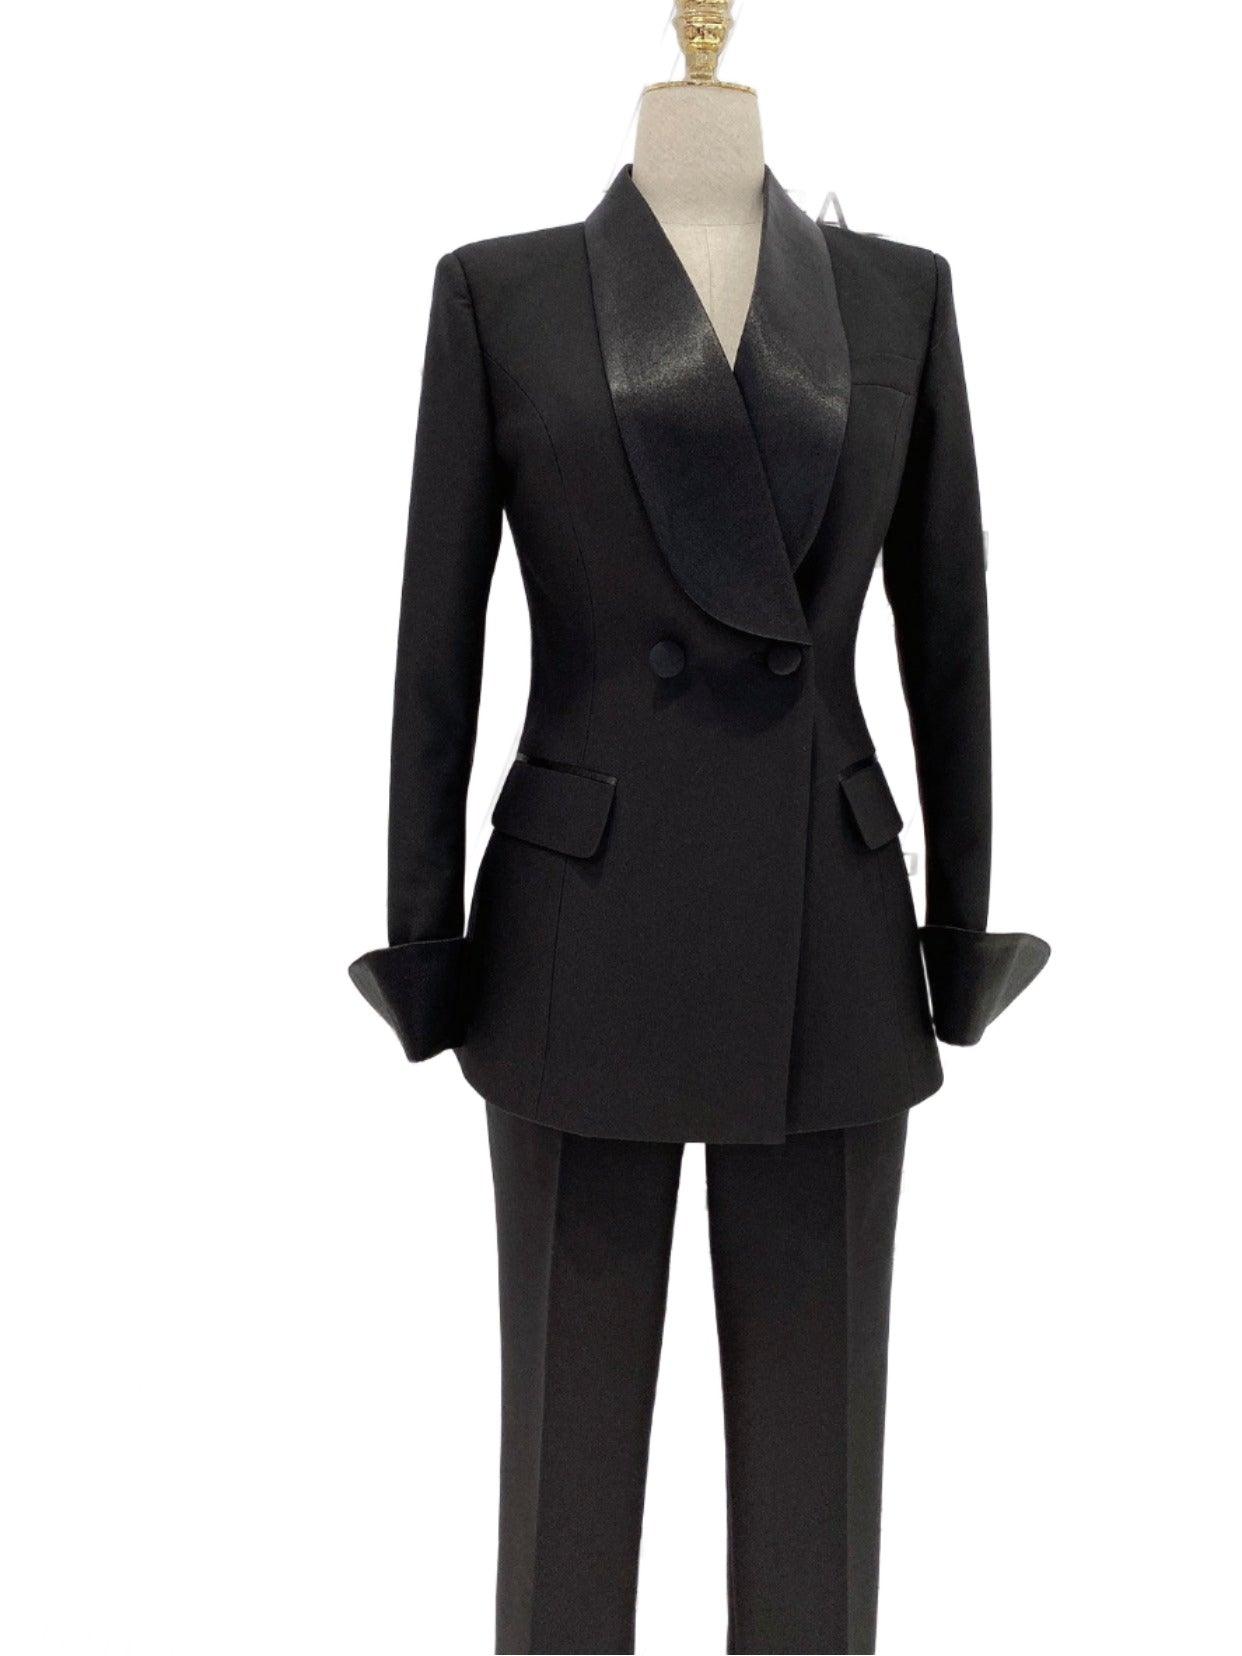 Black Tuxedo Suit - Women Shawl Collar Trouser Suit - Pantsuit - Guocali